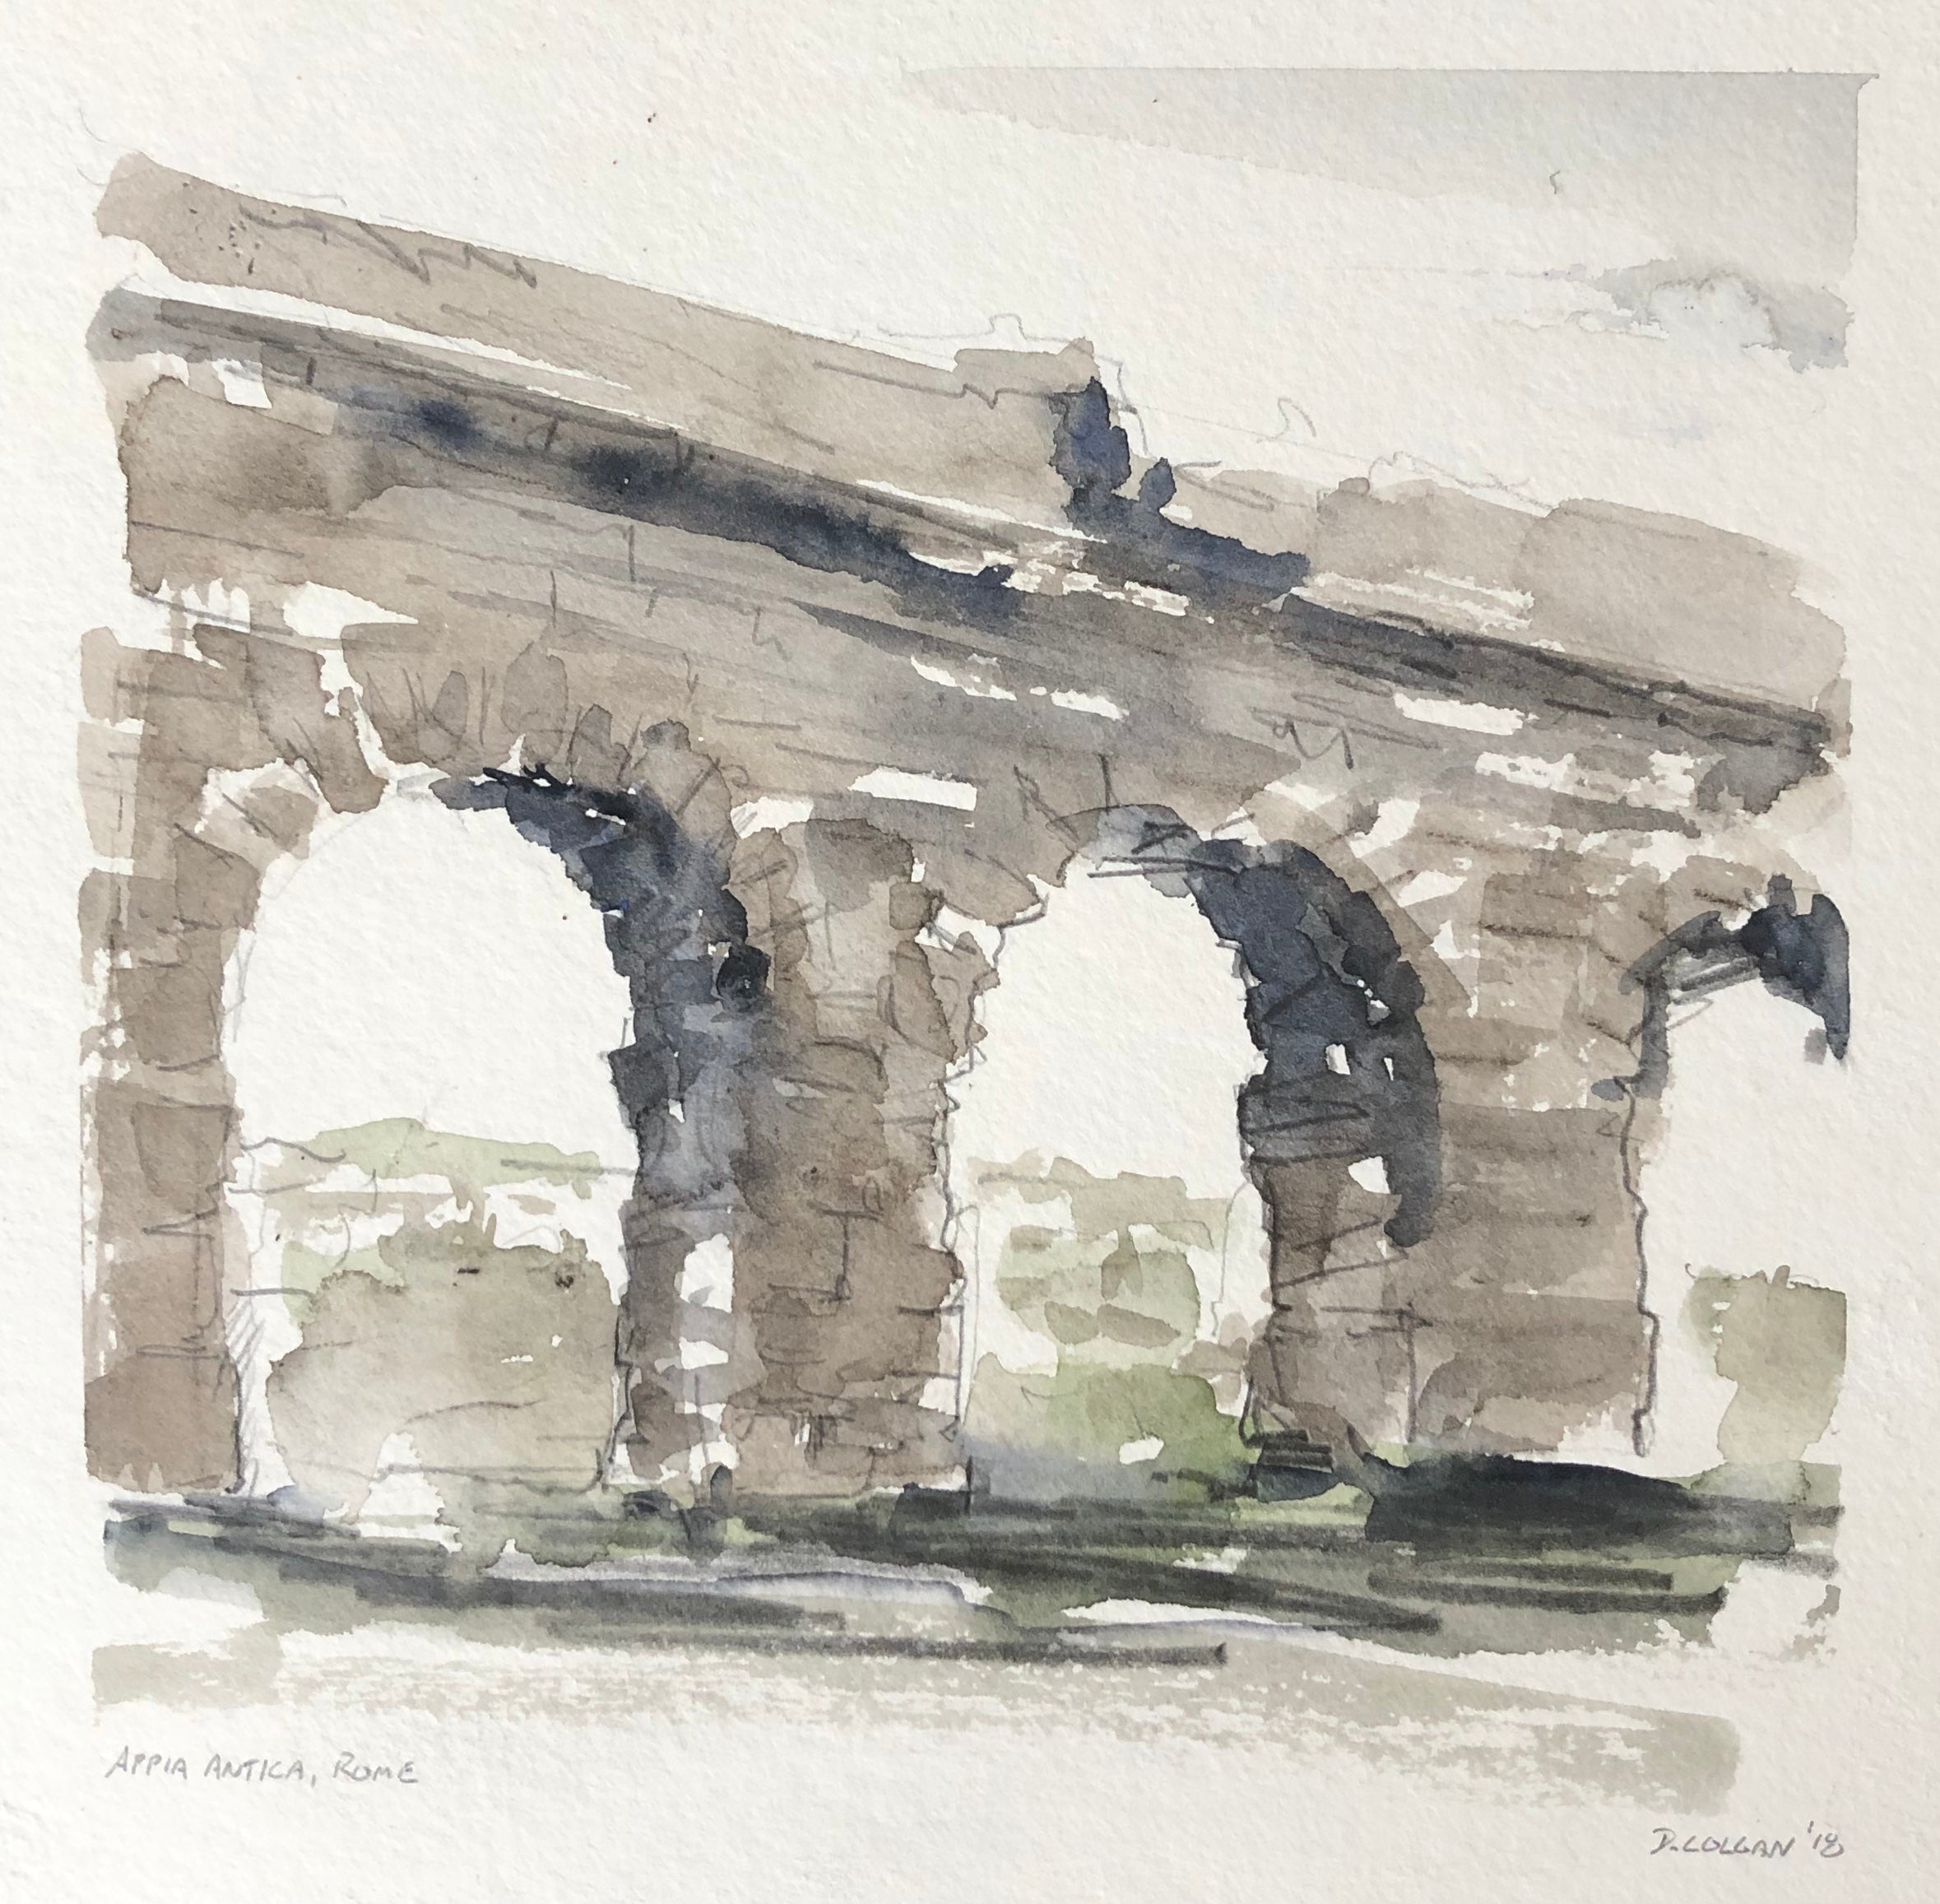 Via Appia Aquaduct, Rome